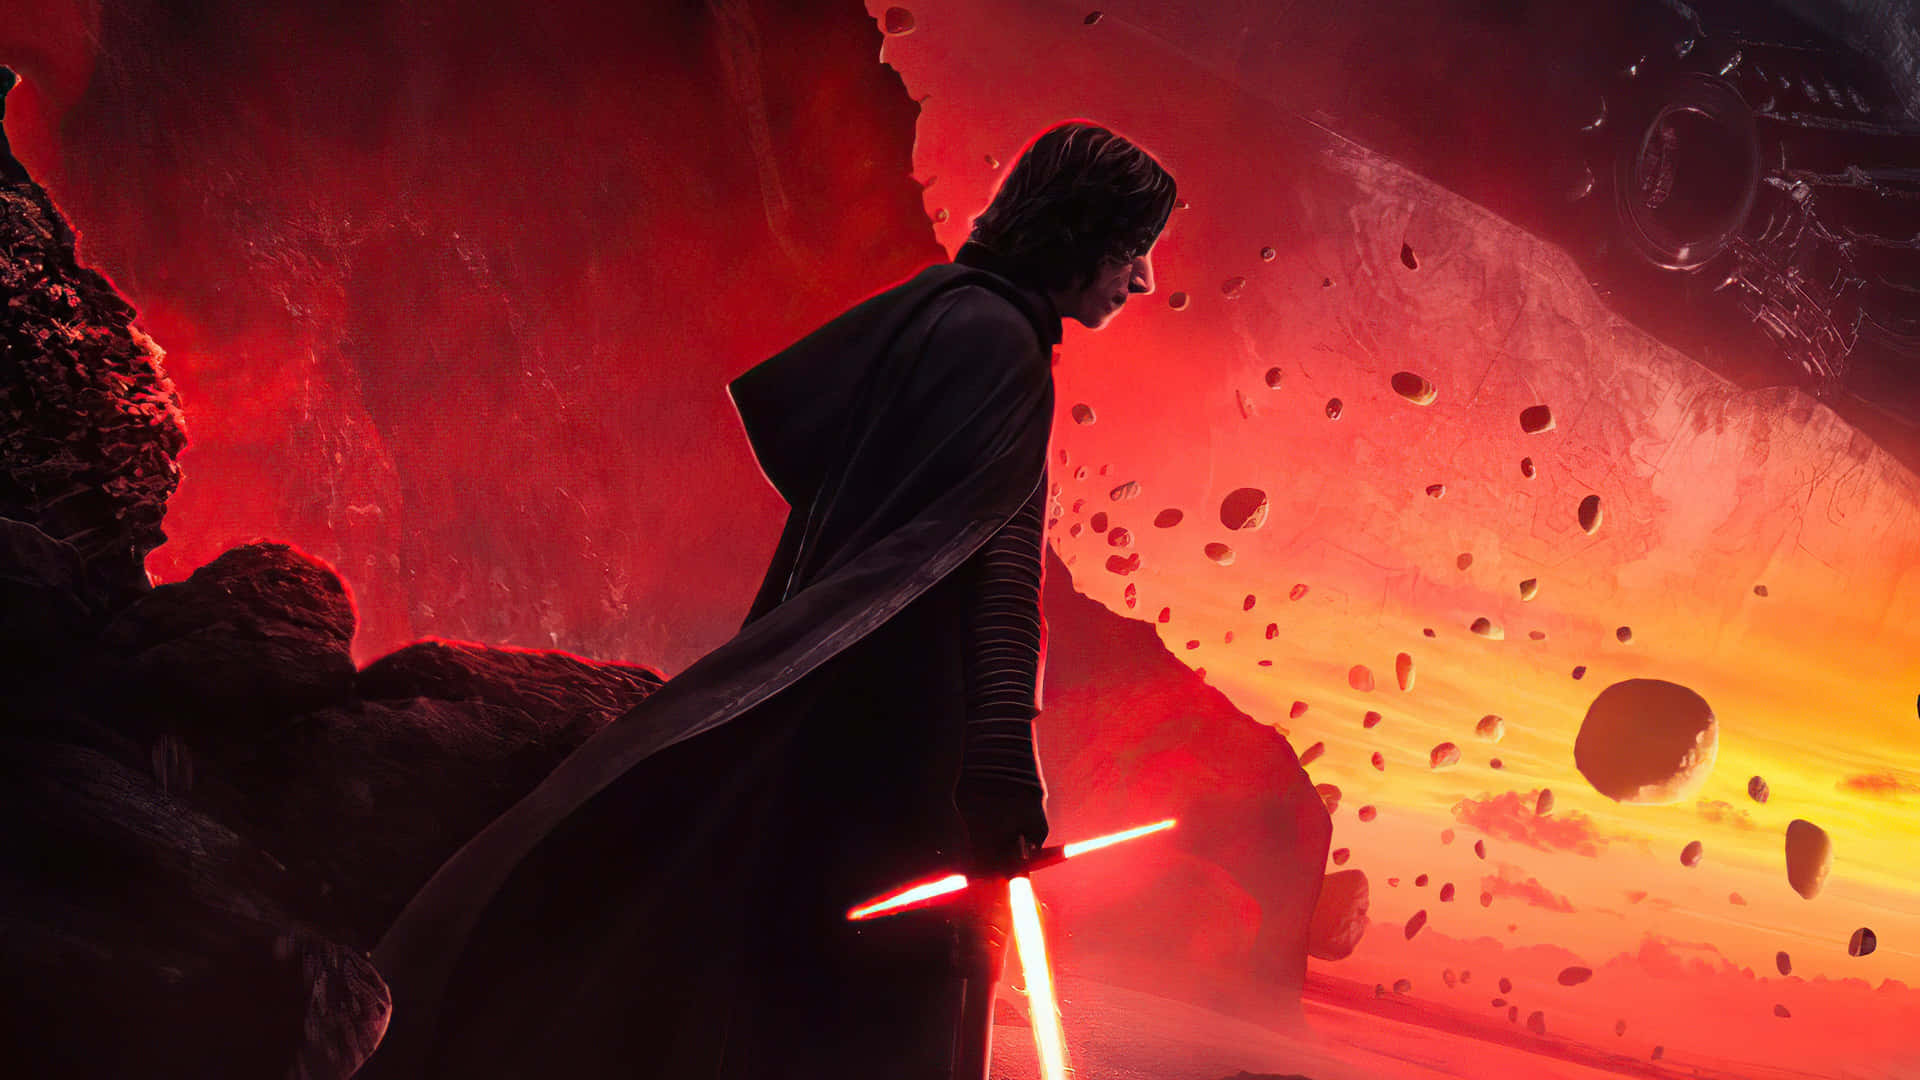 Diedunkle Gestalt Von Kylo Ren In Star Wars: Die Letzten Jedi Wallpaper